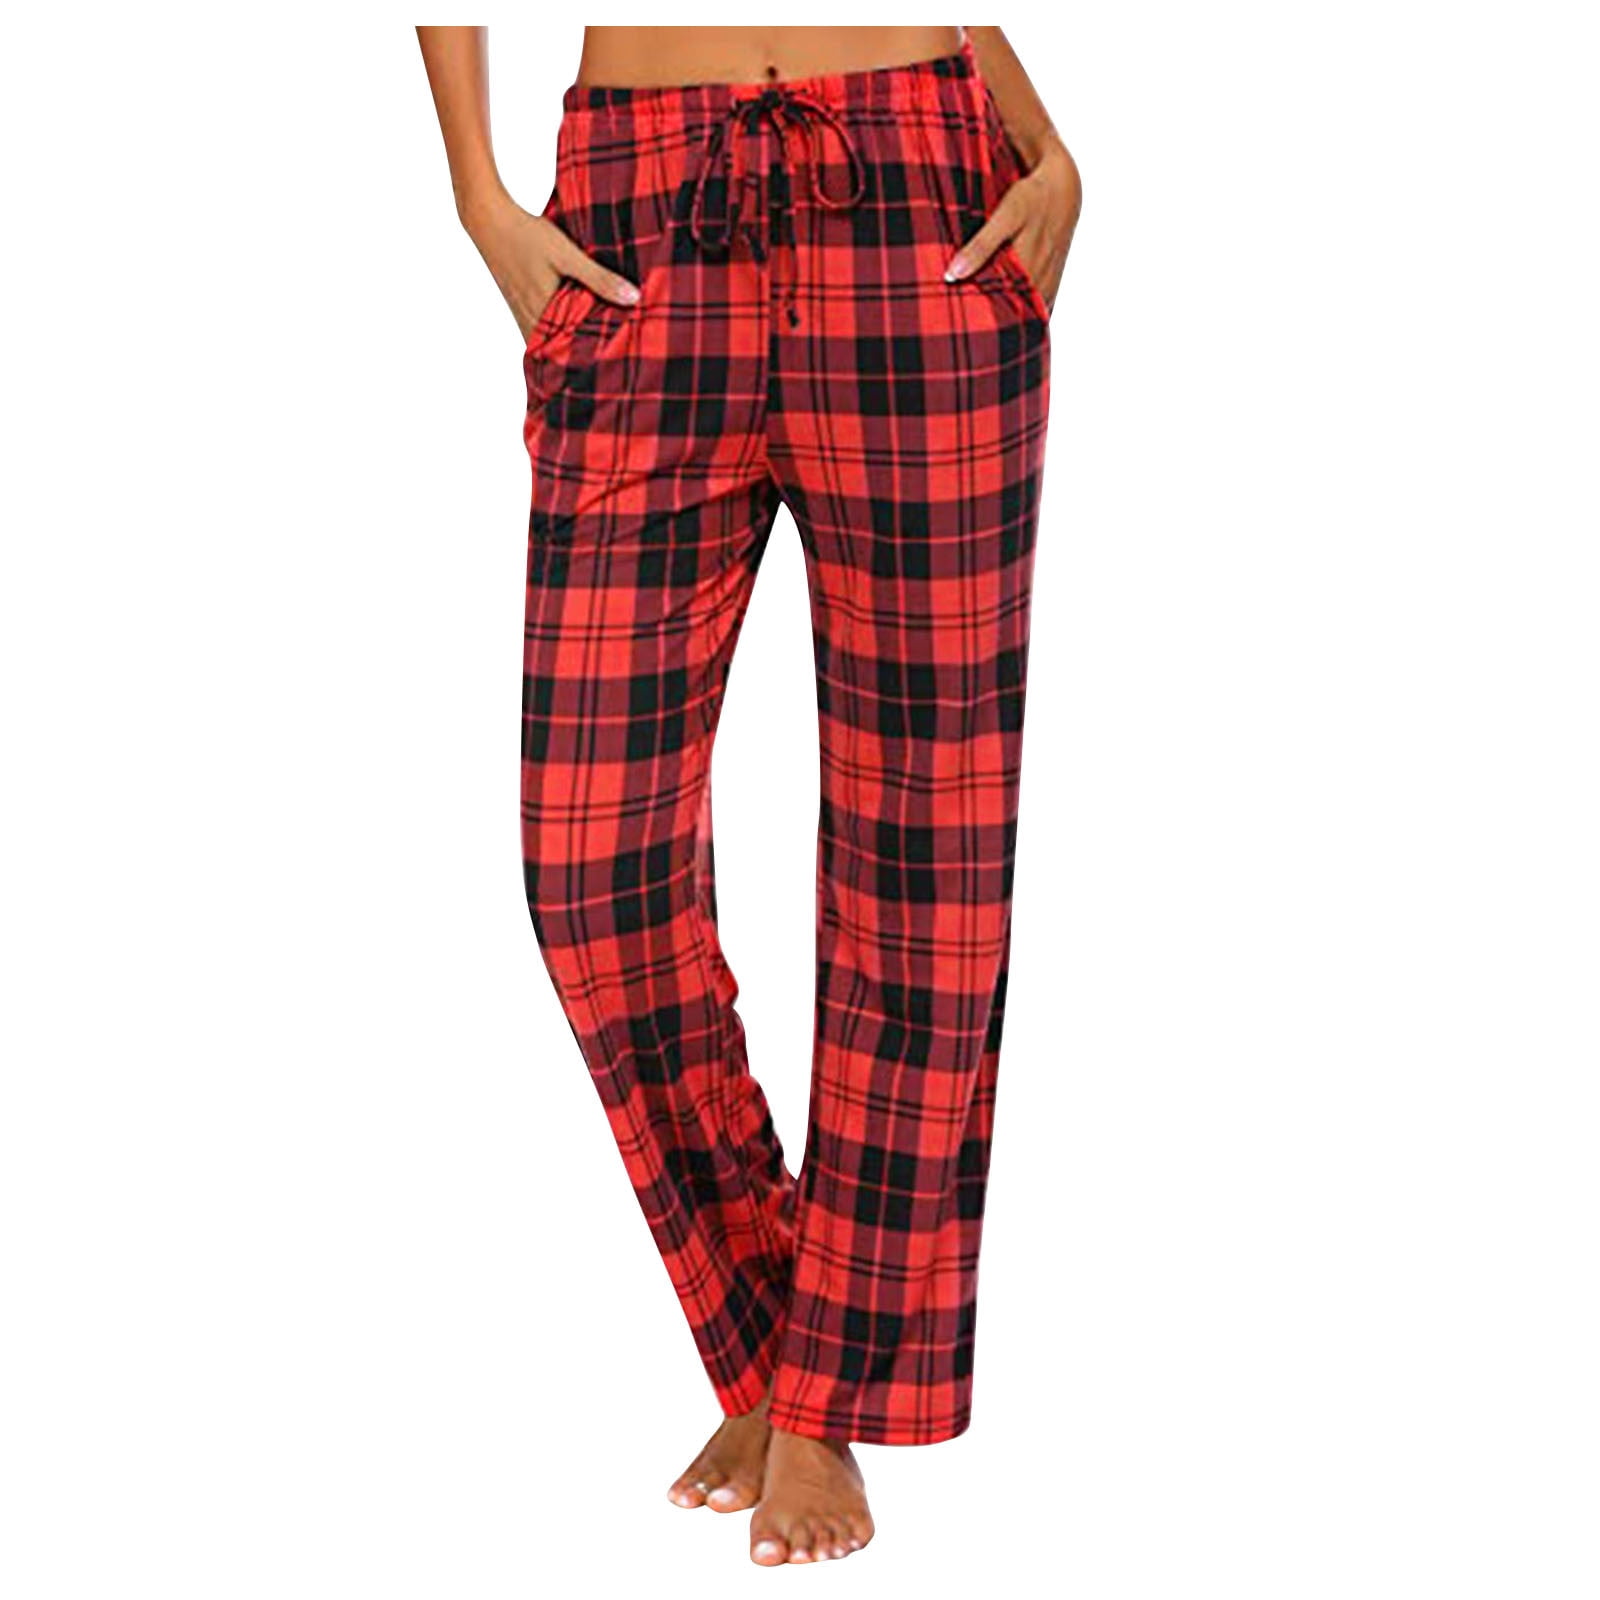 HBYJLZYG Pajamas Wide Leg Pants, Yoga Pants For Womens Casual Plaid ...